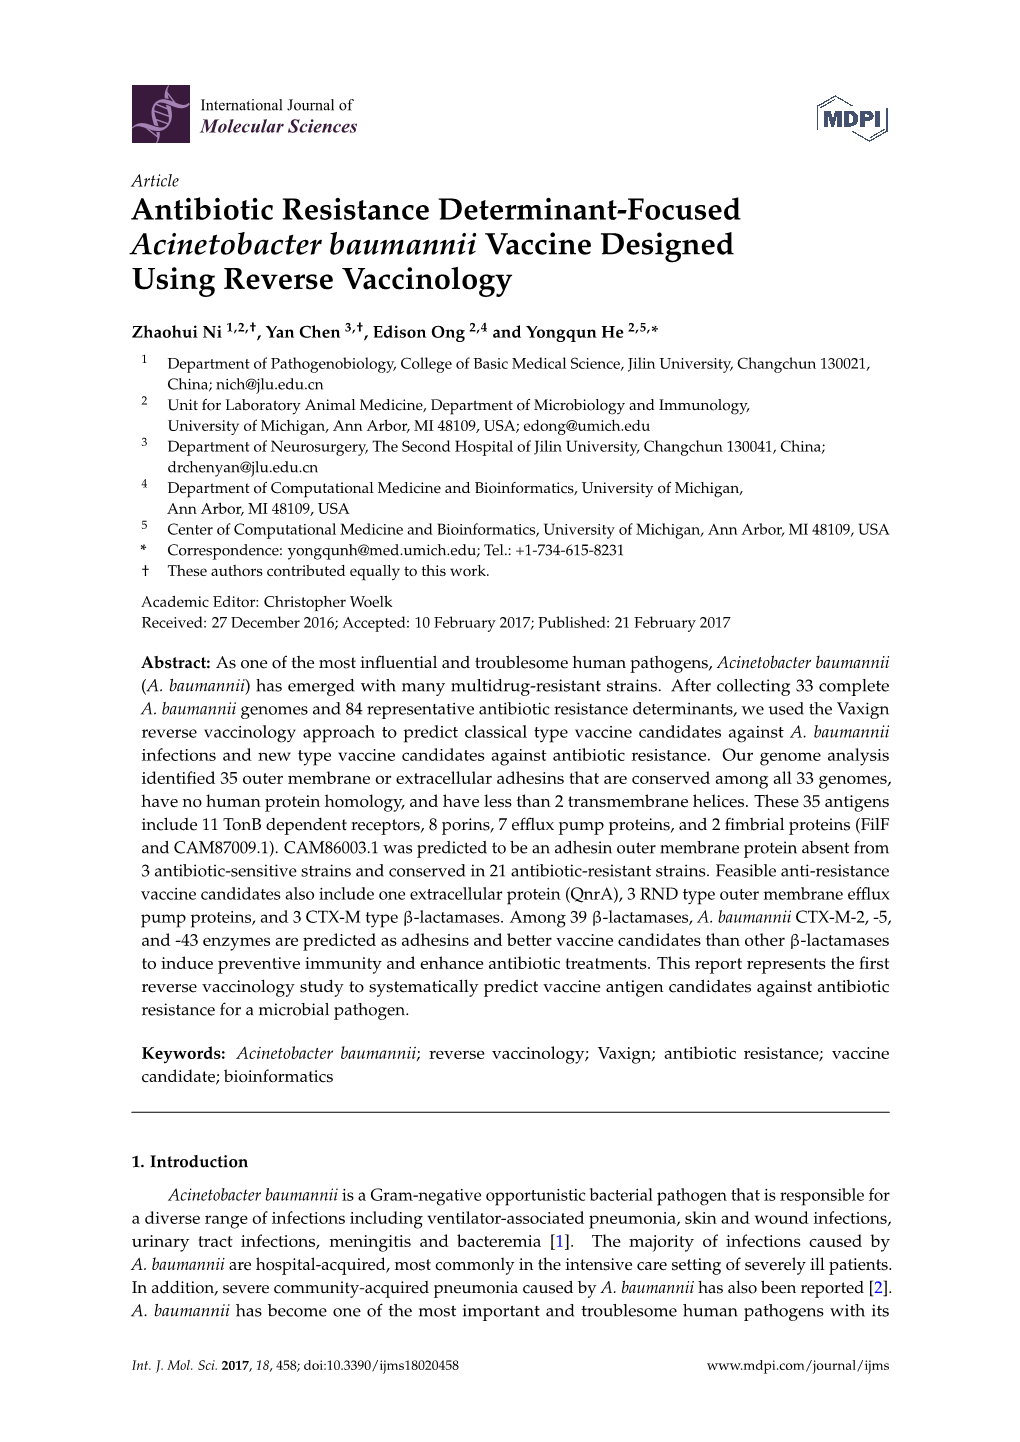 Antibiotic Resistance Determinant-Focused Acinetobacter Baumannii Vaccine Designed Using Reverse Vaccinology